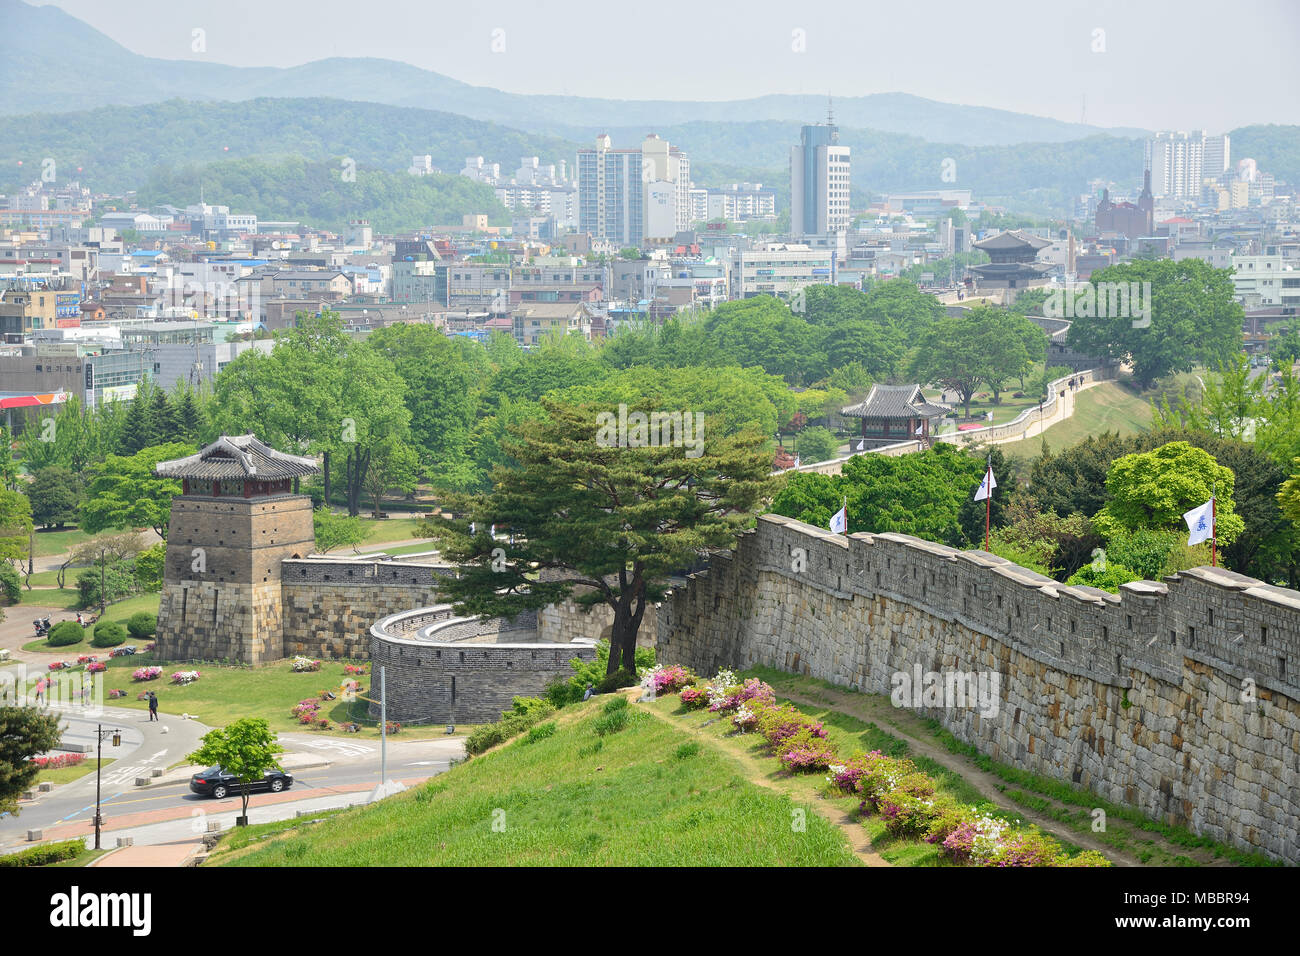 SUWON, Corea - Mayo 02, 2014: Hwaseong es la muralla que rodea el centro de Suwon, capital de la provincia de Gyeonggi-do, Corea del Sur. Foto de stock